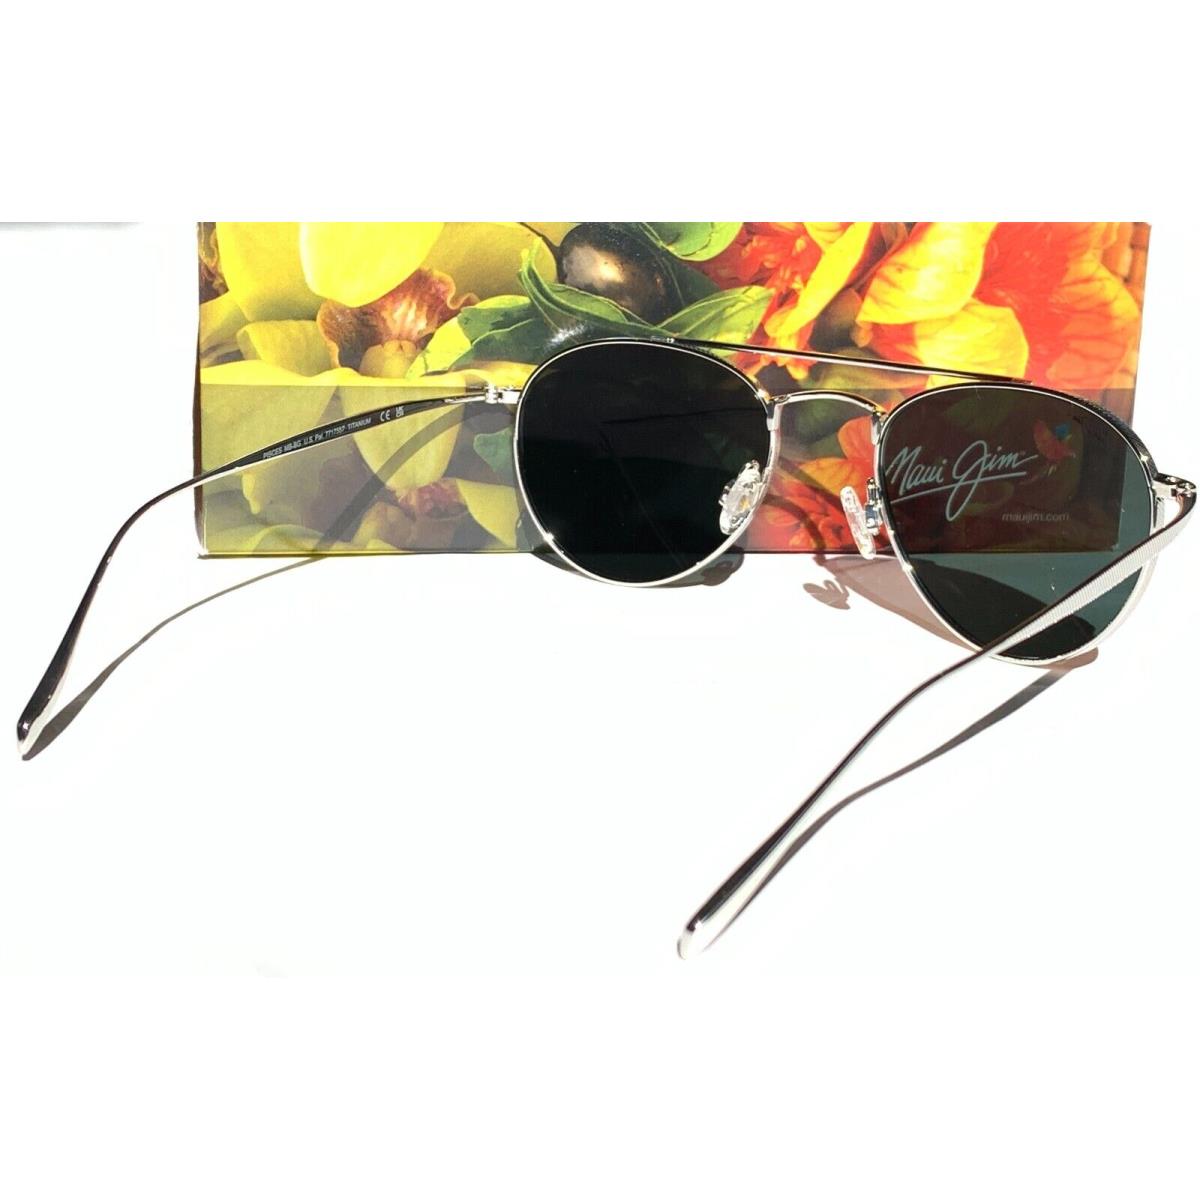 Maui Jim sunglasses  - Silver Frame, Gray Lens